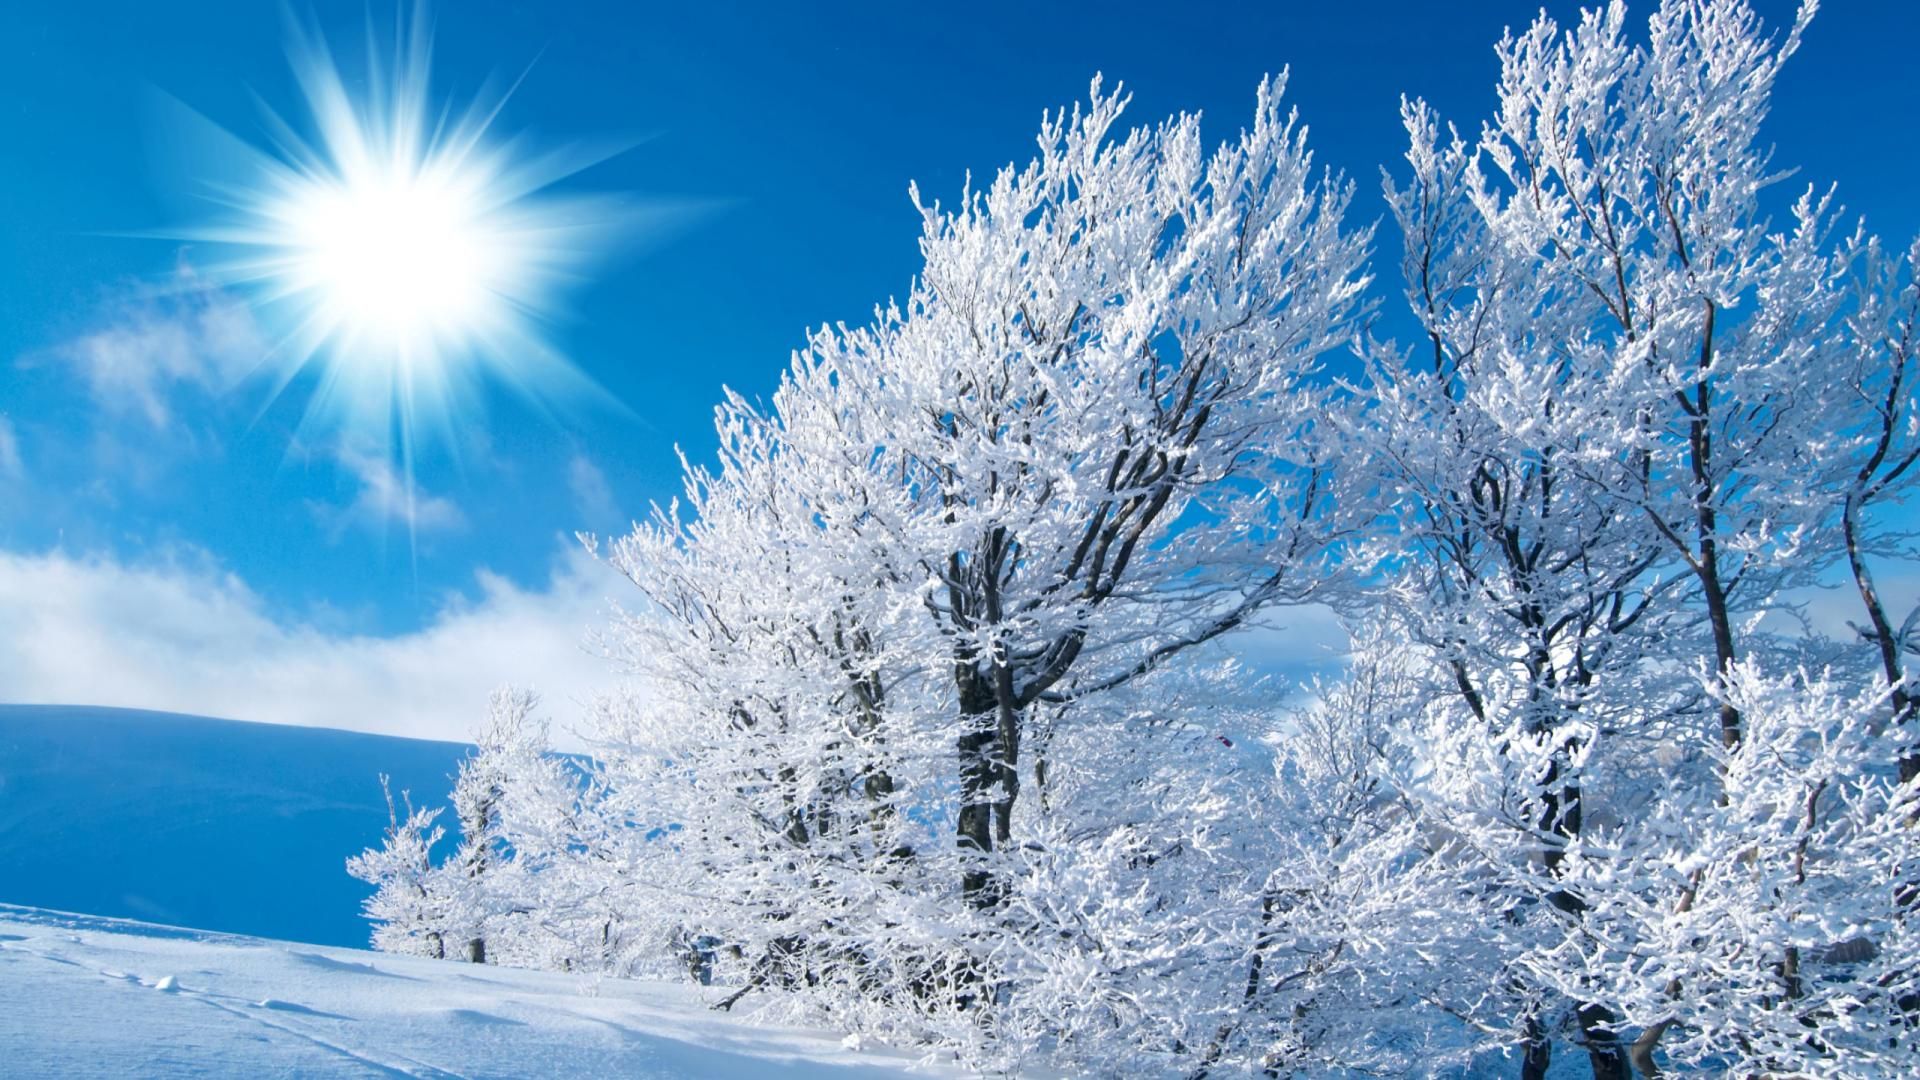 Khám phá ngay bức ảnh nền Winter Desktop Wallpaper để nhìn thấy những cánh rừng tuyết trắng được bao phủ bởi ánh nắng ấm áp của mặt trời.